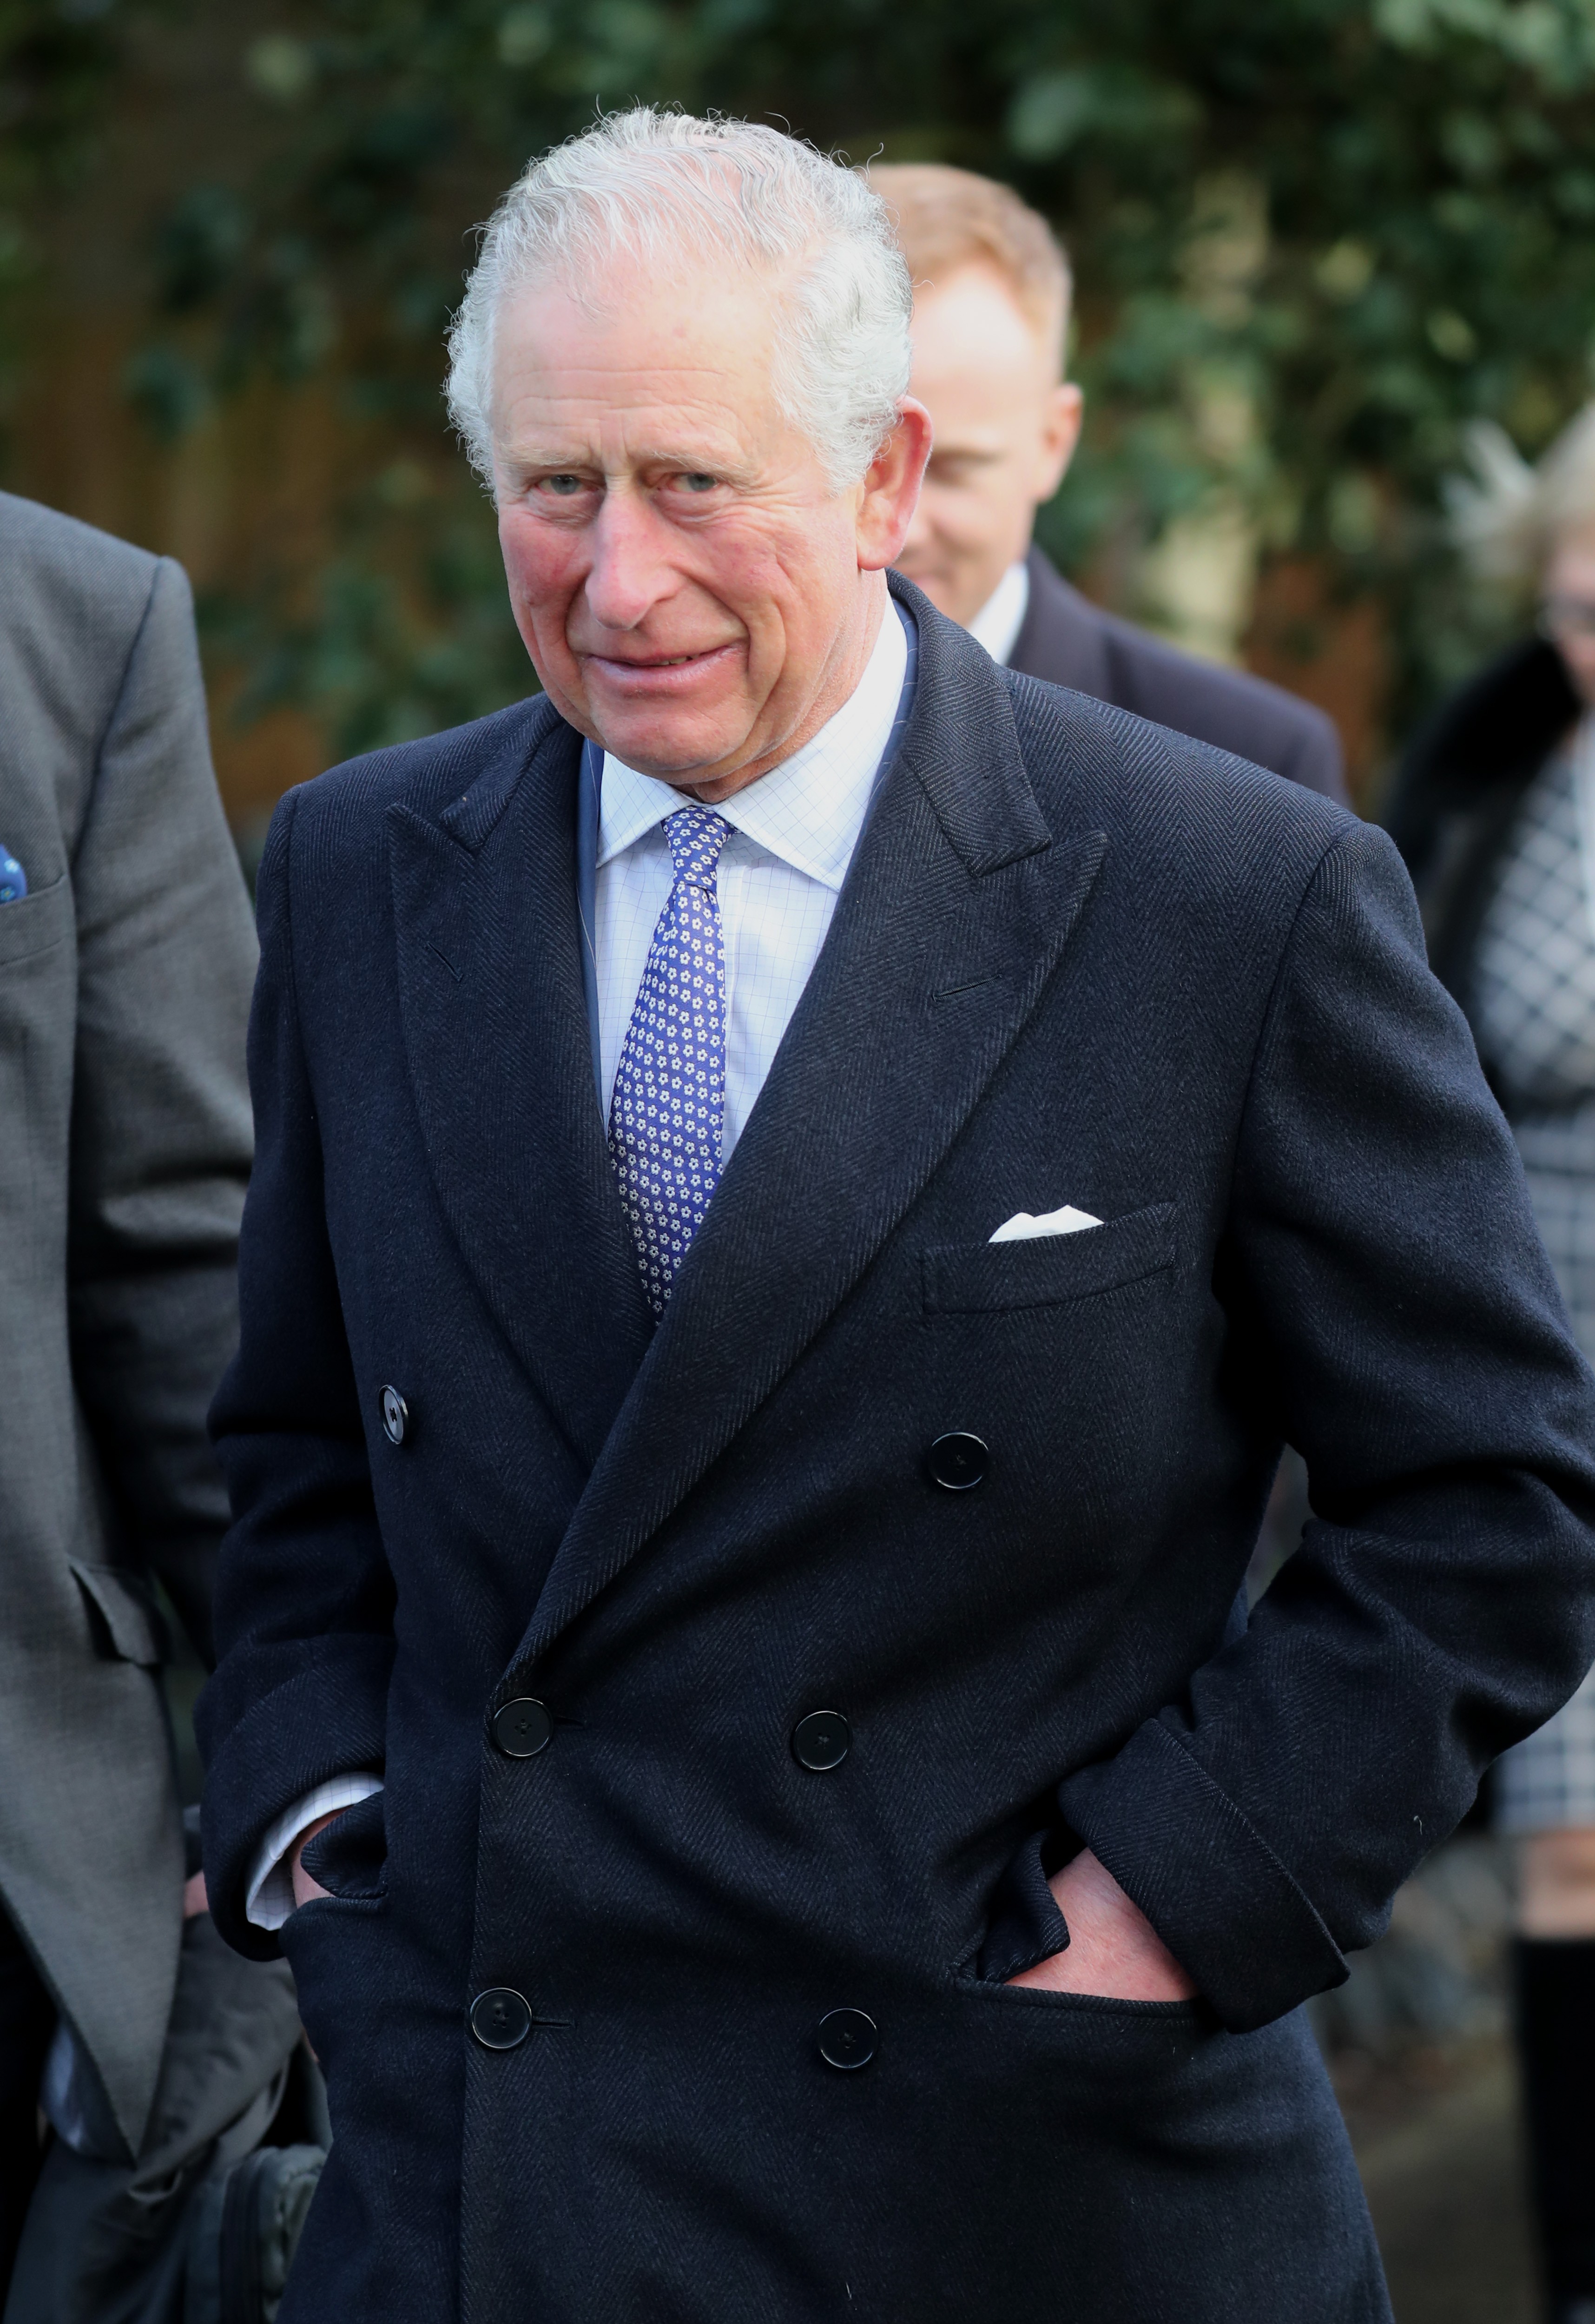 Príncipe Charles quer ser “Rei George” quando coroado, aponta tabloide britânico (Foto: Getty Images)